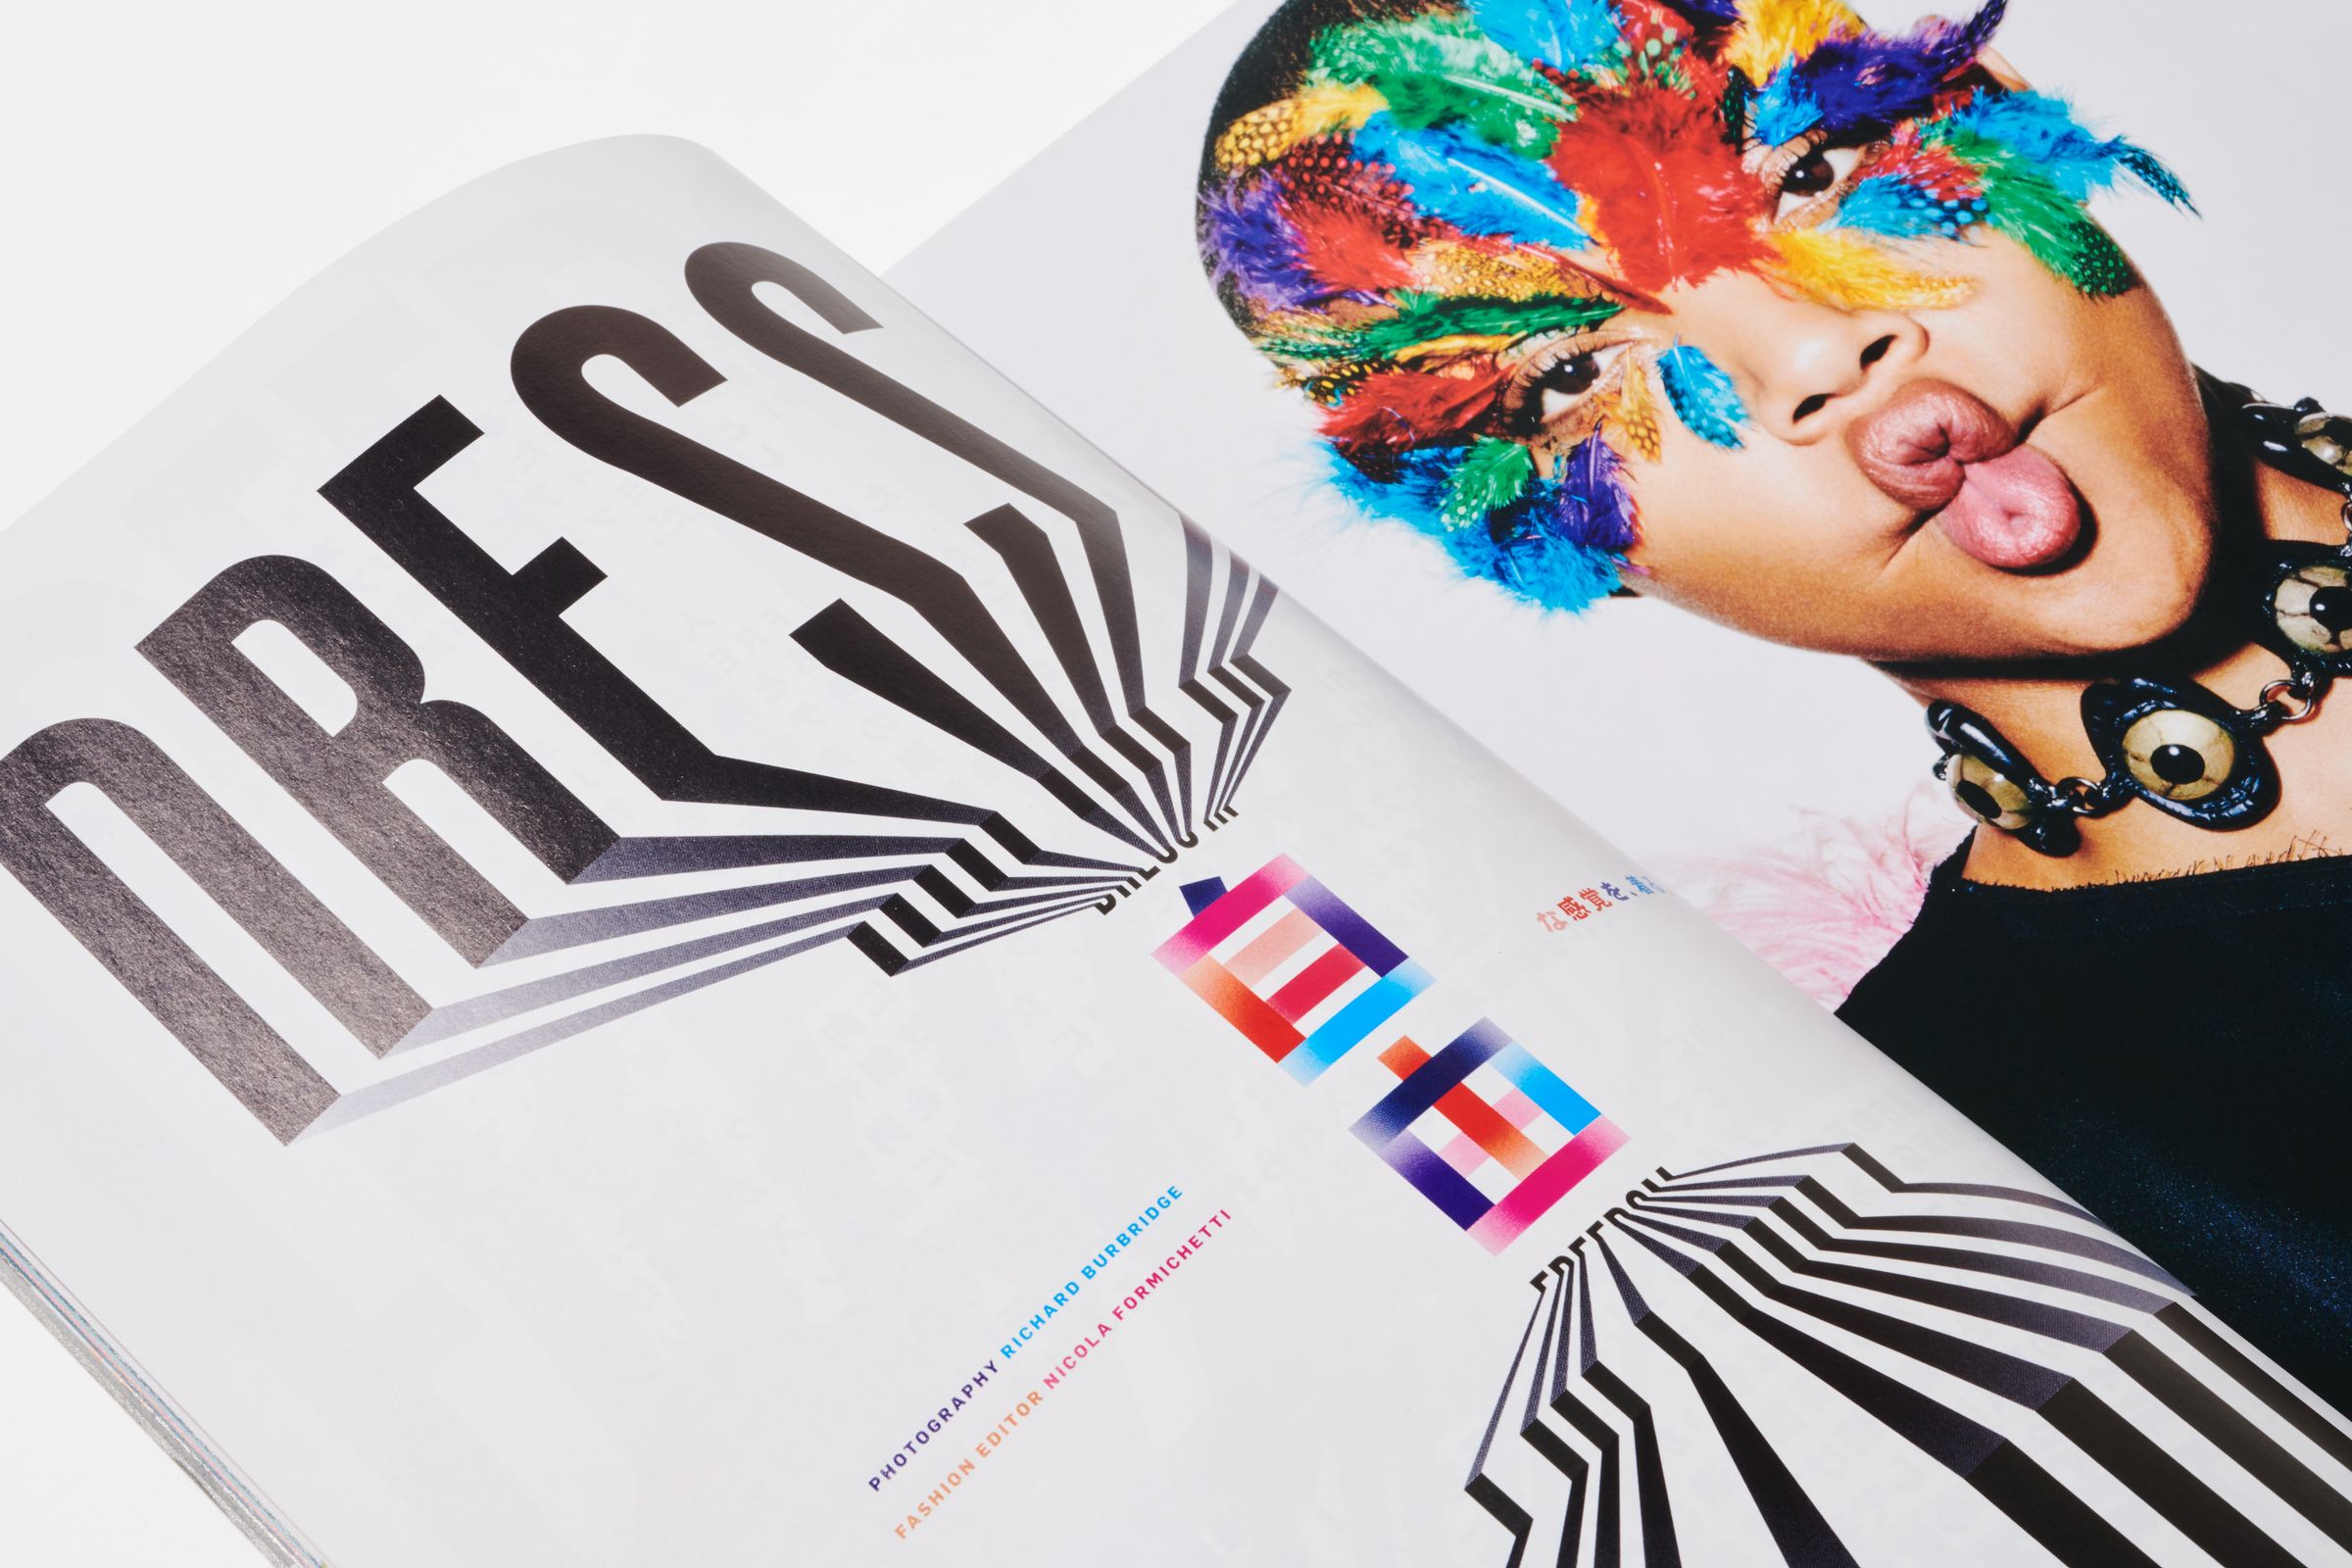 FREE Magazine spread design